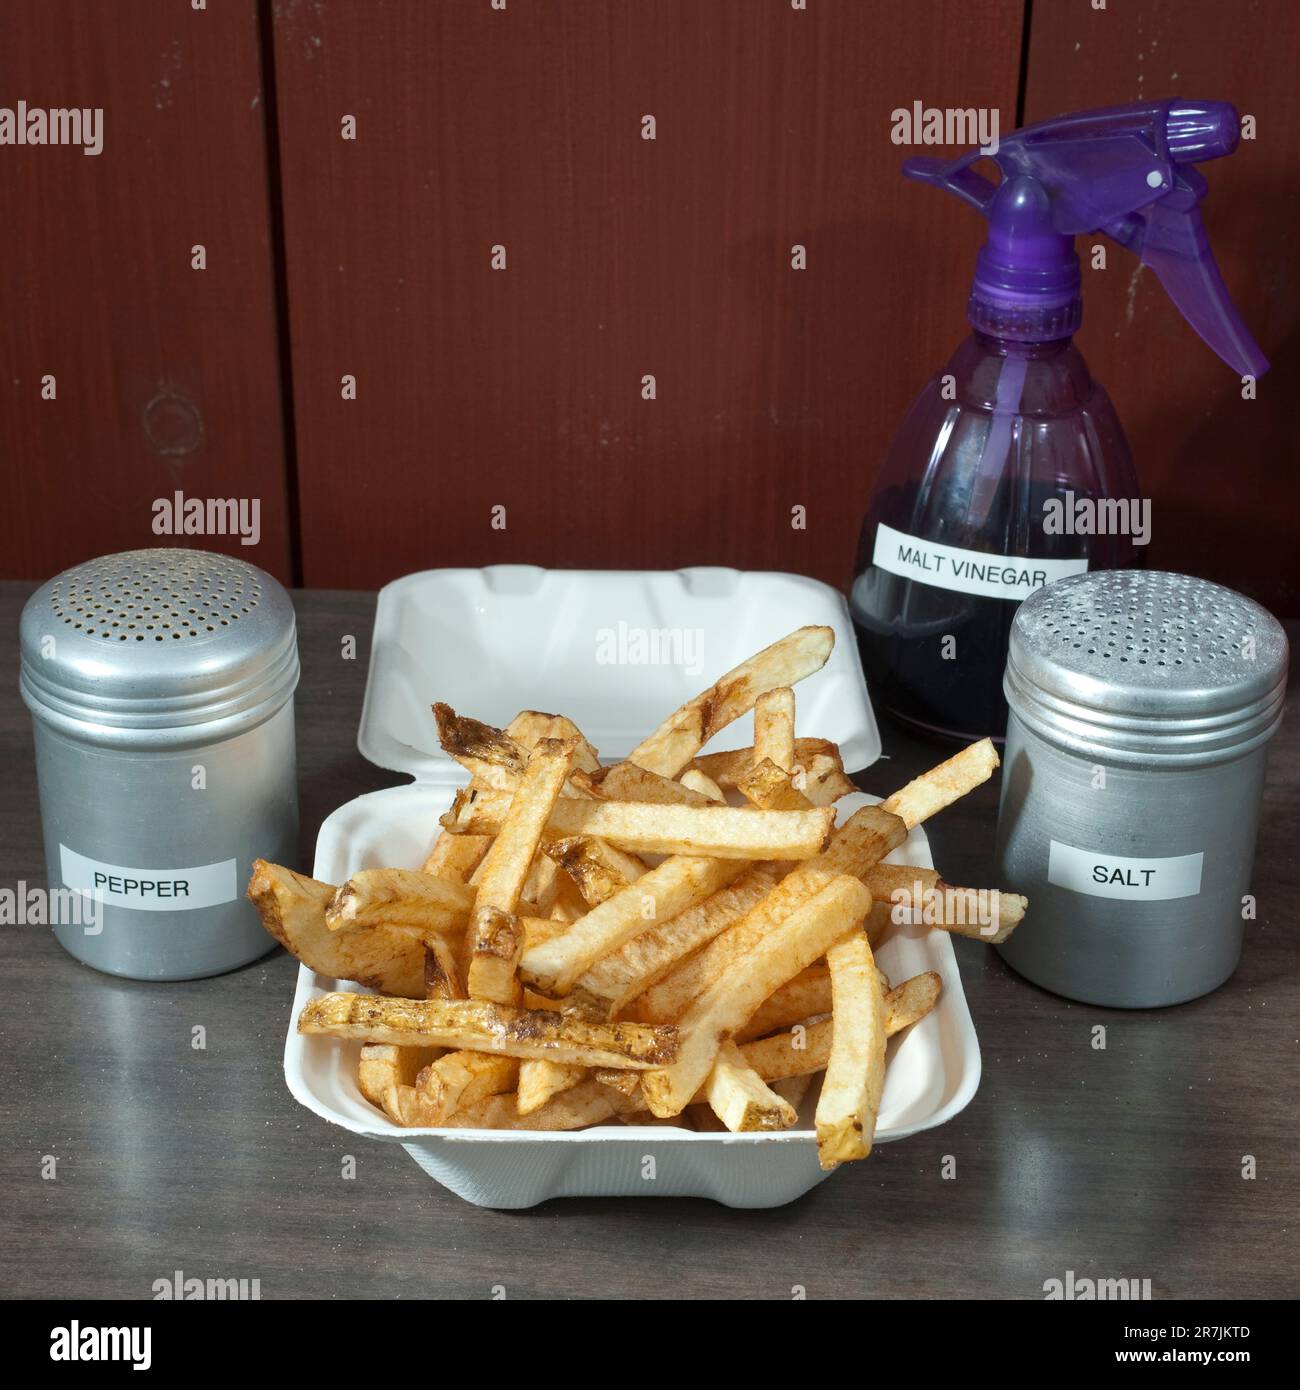 Tous les ingrédients clés pour obtenir des frites parfaites (frites) sont placés sur le comptoir d'un camion à frites local, de frites coupées à la main, de salières et poivrières et de vinaigre de malt dans une bouteille vaporisée, à Elm Banque D'Images